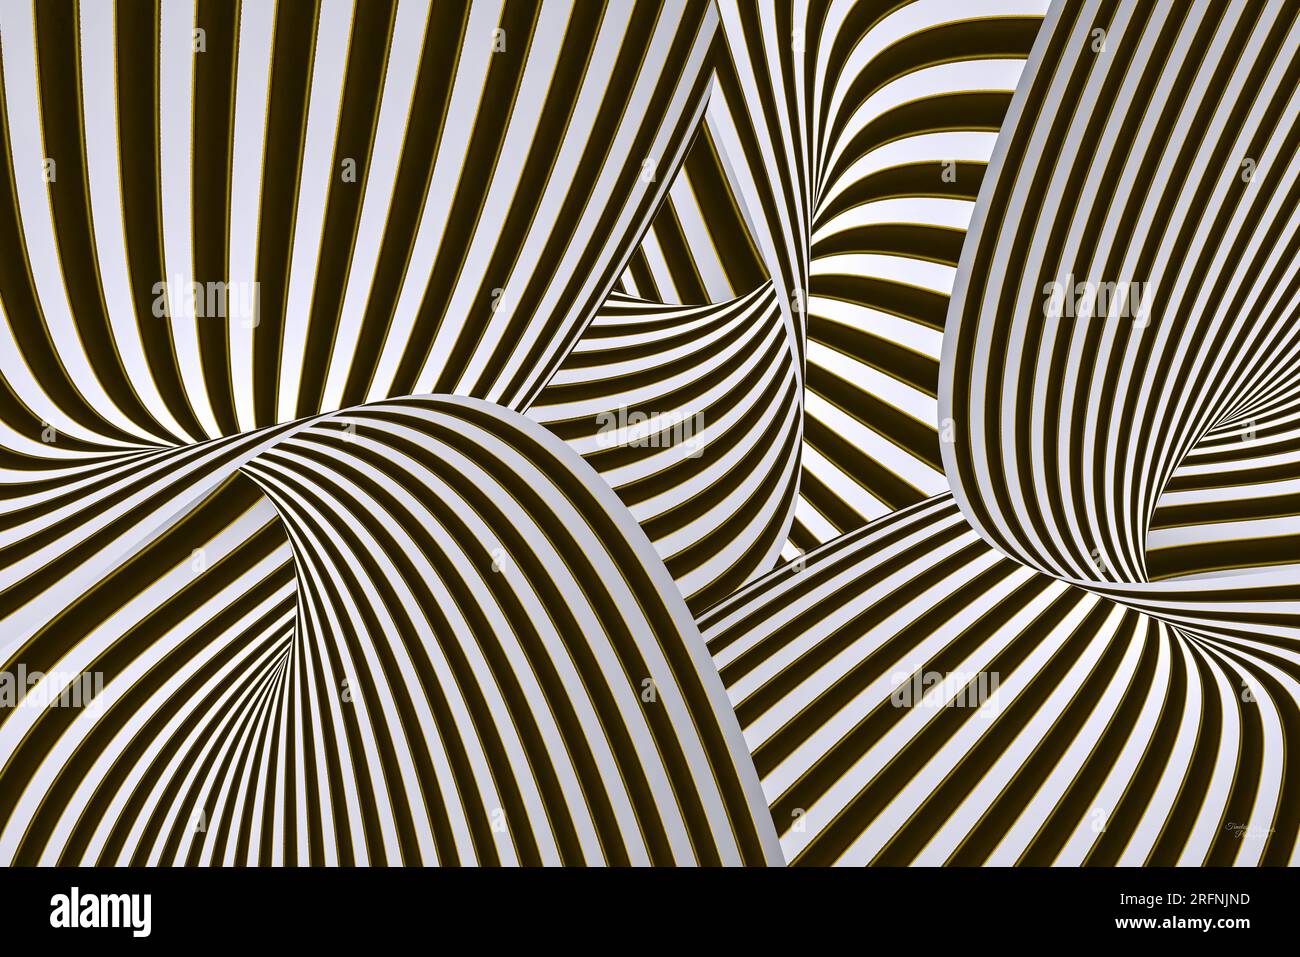 De l'art numérique de torsions 3D de bandes noires, dorées et blanches. Banque D'Images